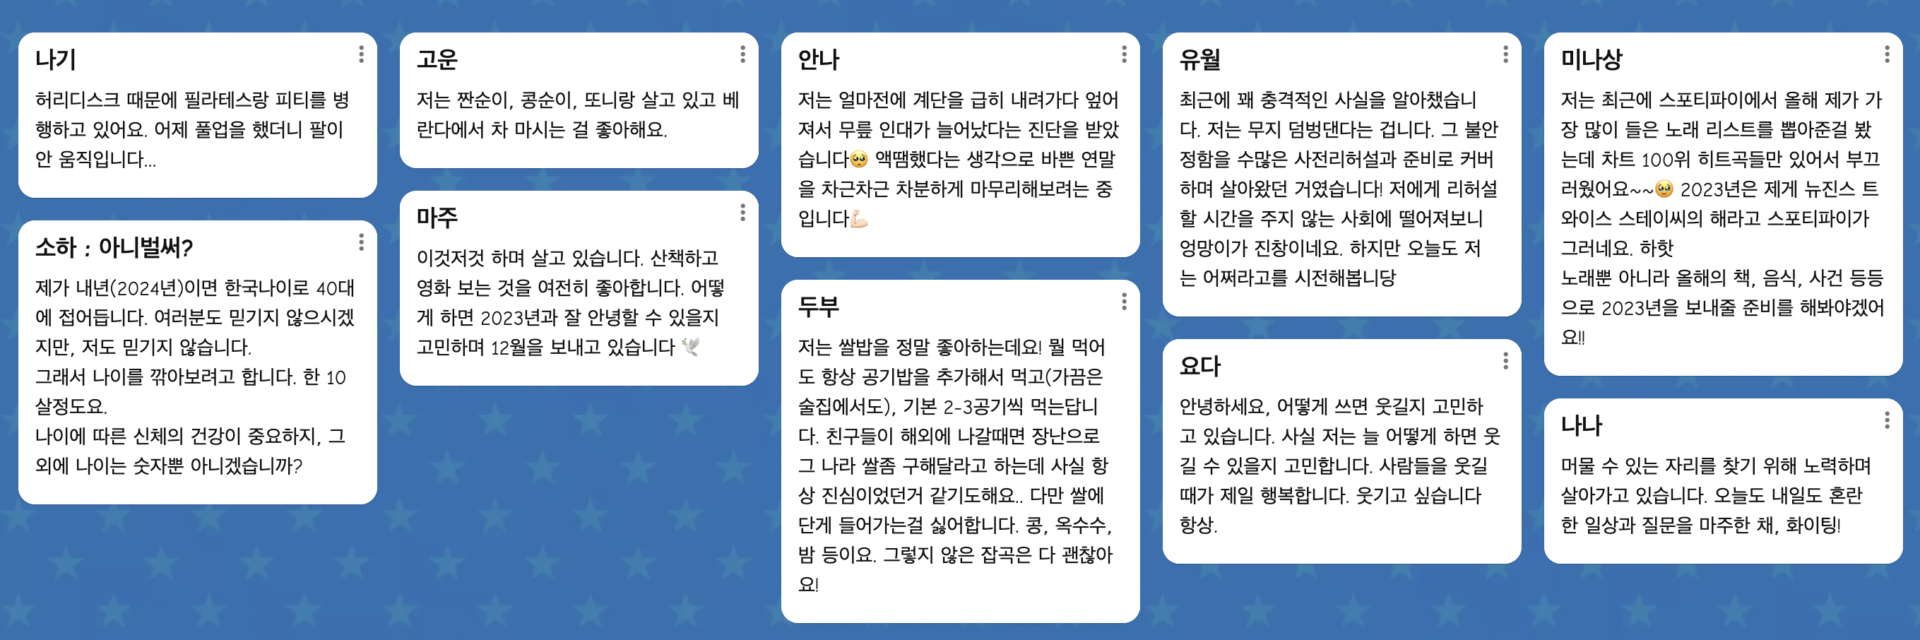 사진1. 서울인권영화제 활동가의 한줄 TMI 자기소개 모음. 패들릿 화면에 빼곡하게 적혀있다.